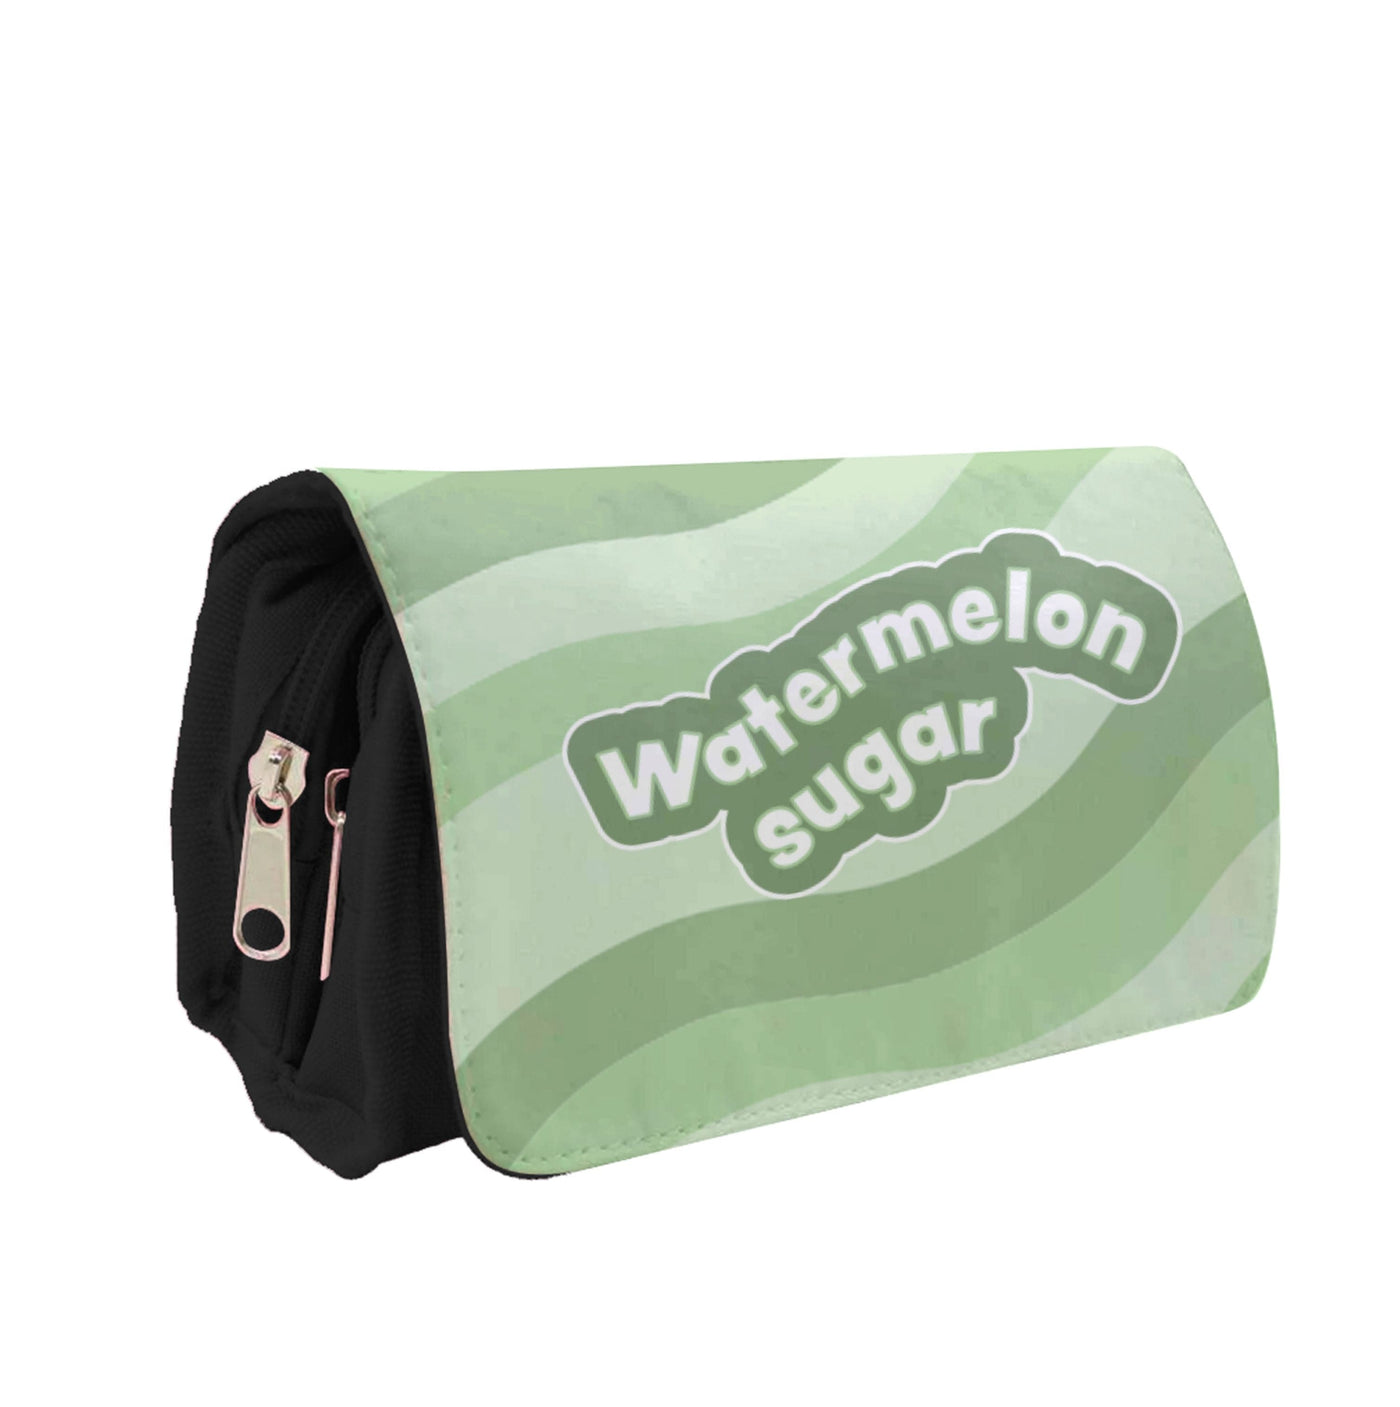 Watermelon Sugar Abstract - Harry Pencil Case